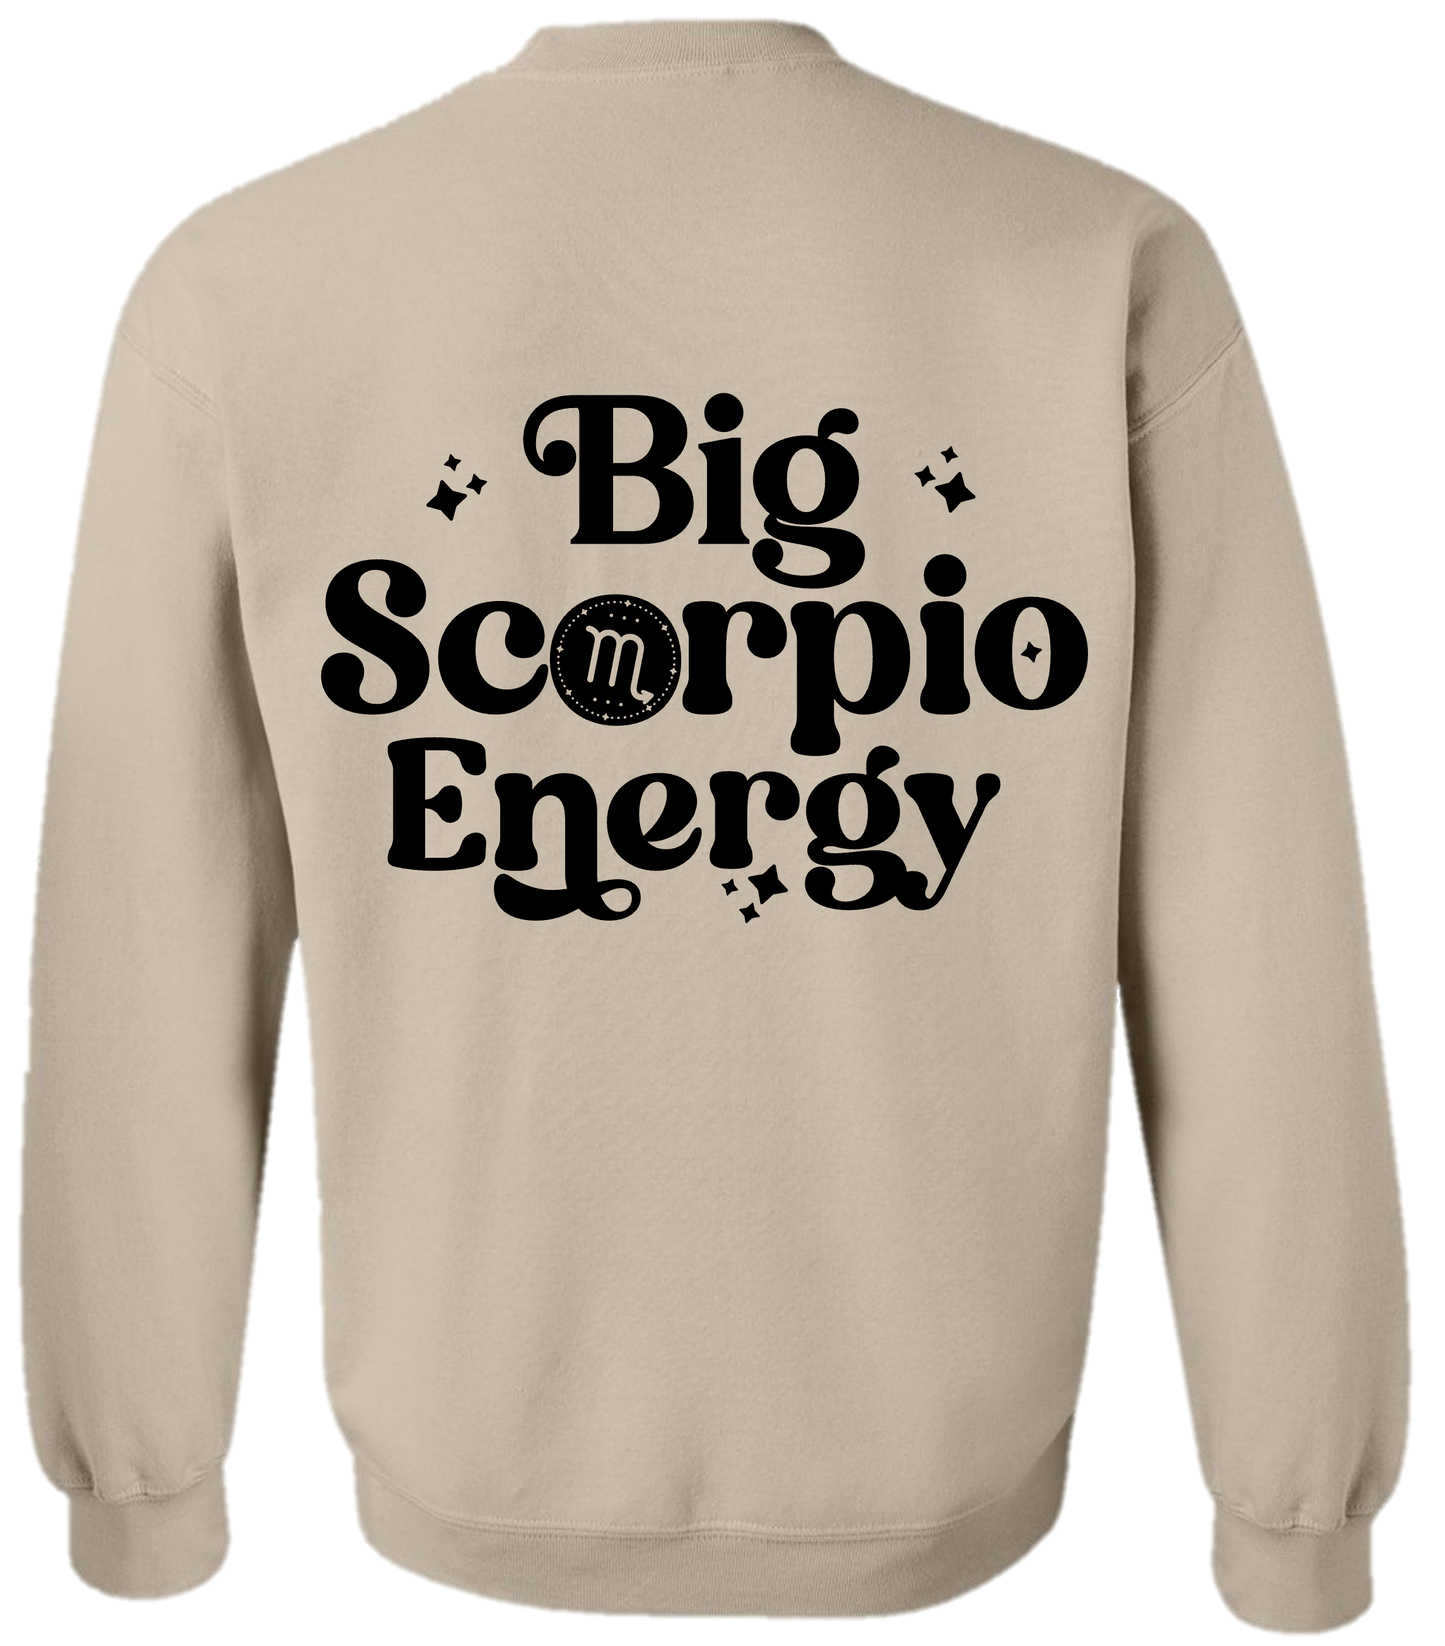 Big Scorpio Energy Sweatshirt